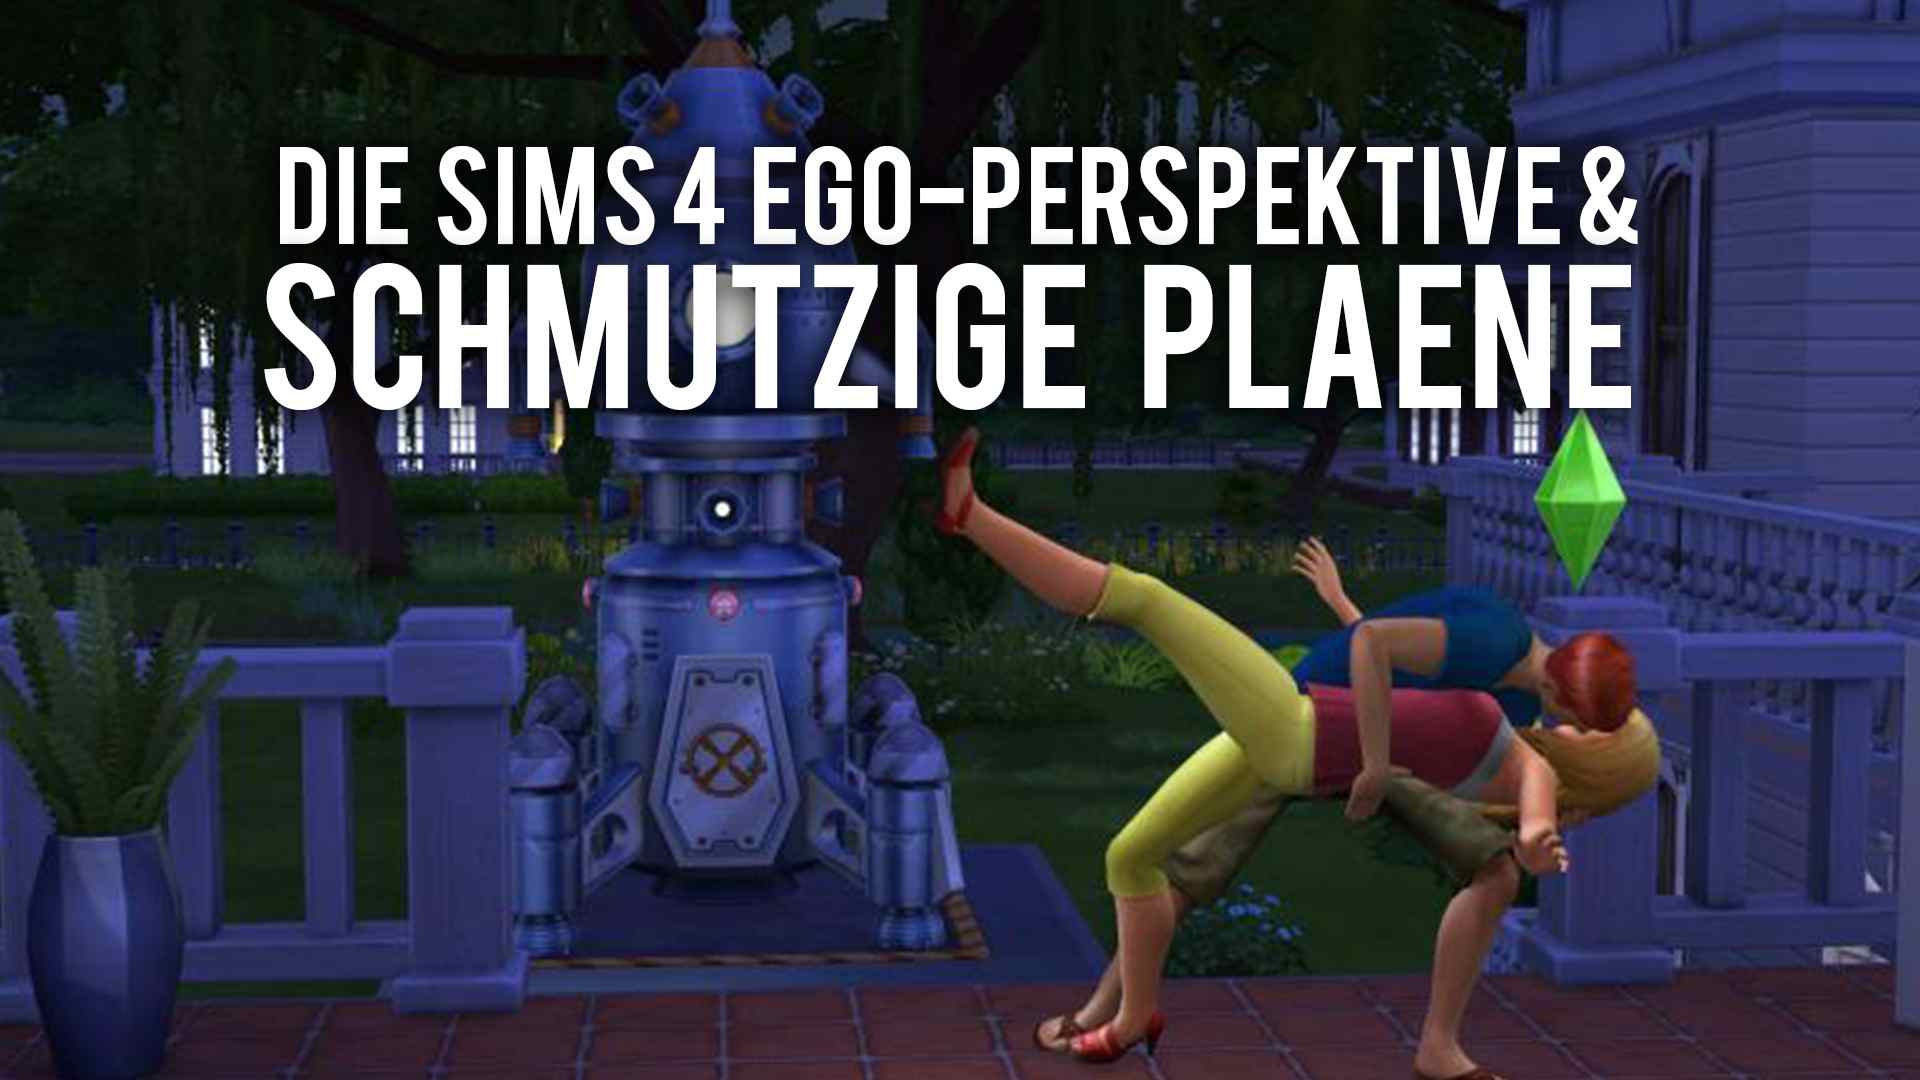 Die Sims 4 mit Ego-Perspektive - Spieler haben schmutzige Pläne